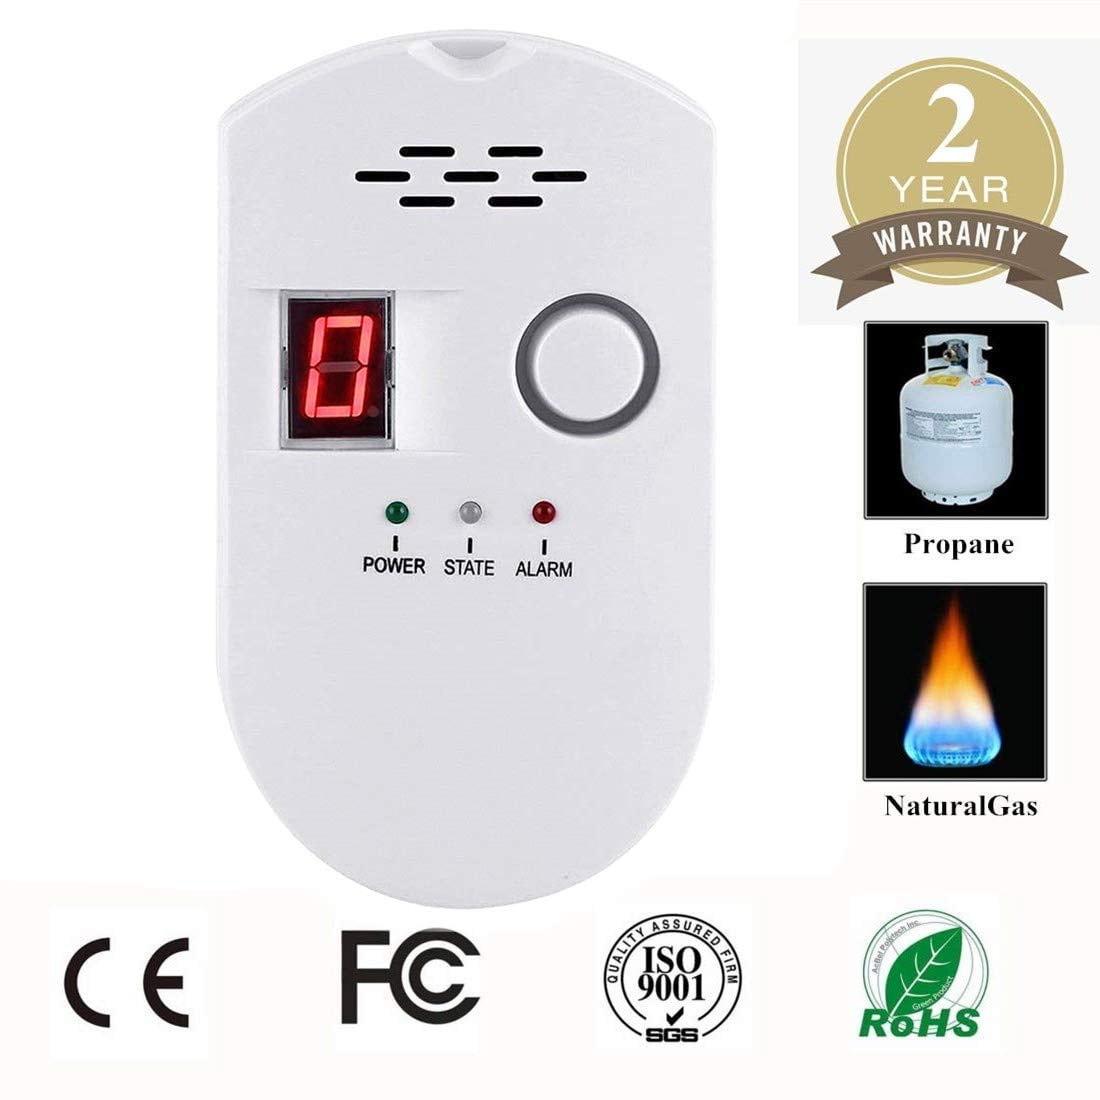 Detector Sensor Alarm Natural Leak Propane Butane Methane Safe Smart Lpg New 